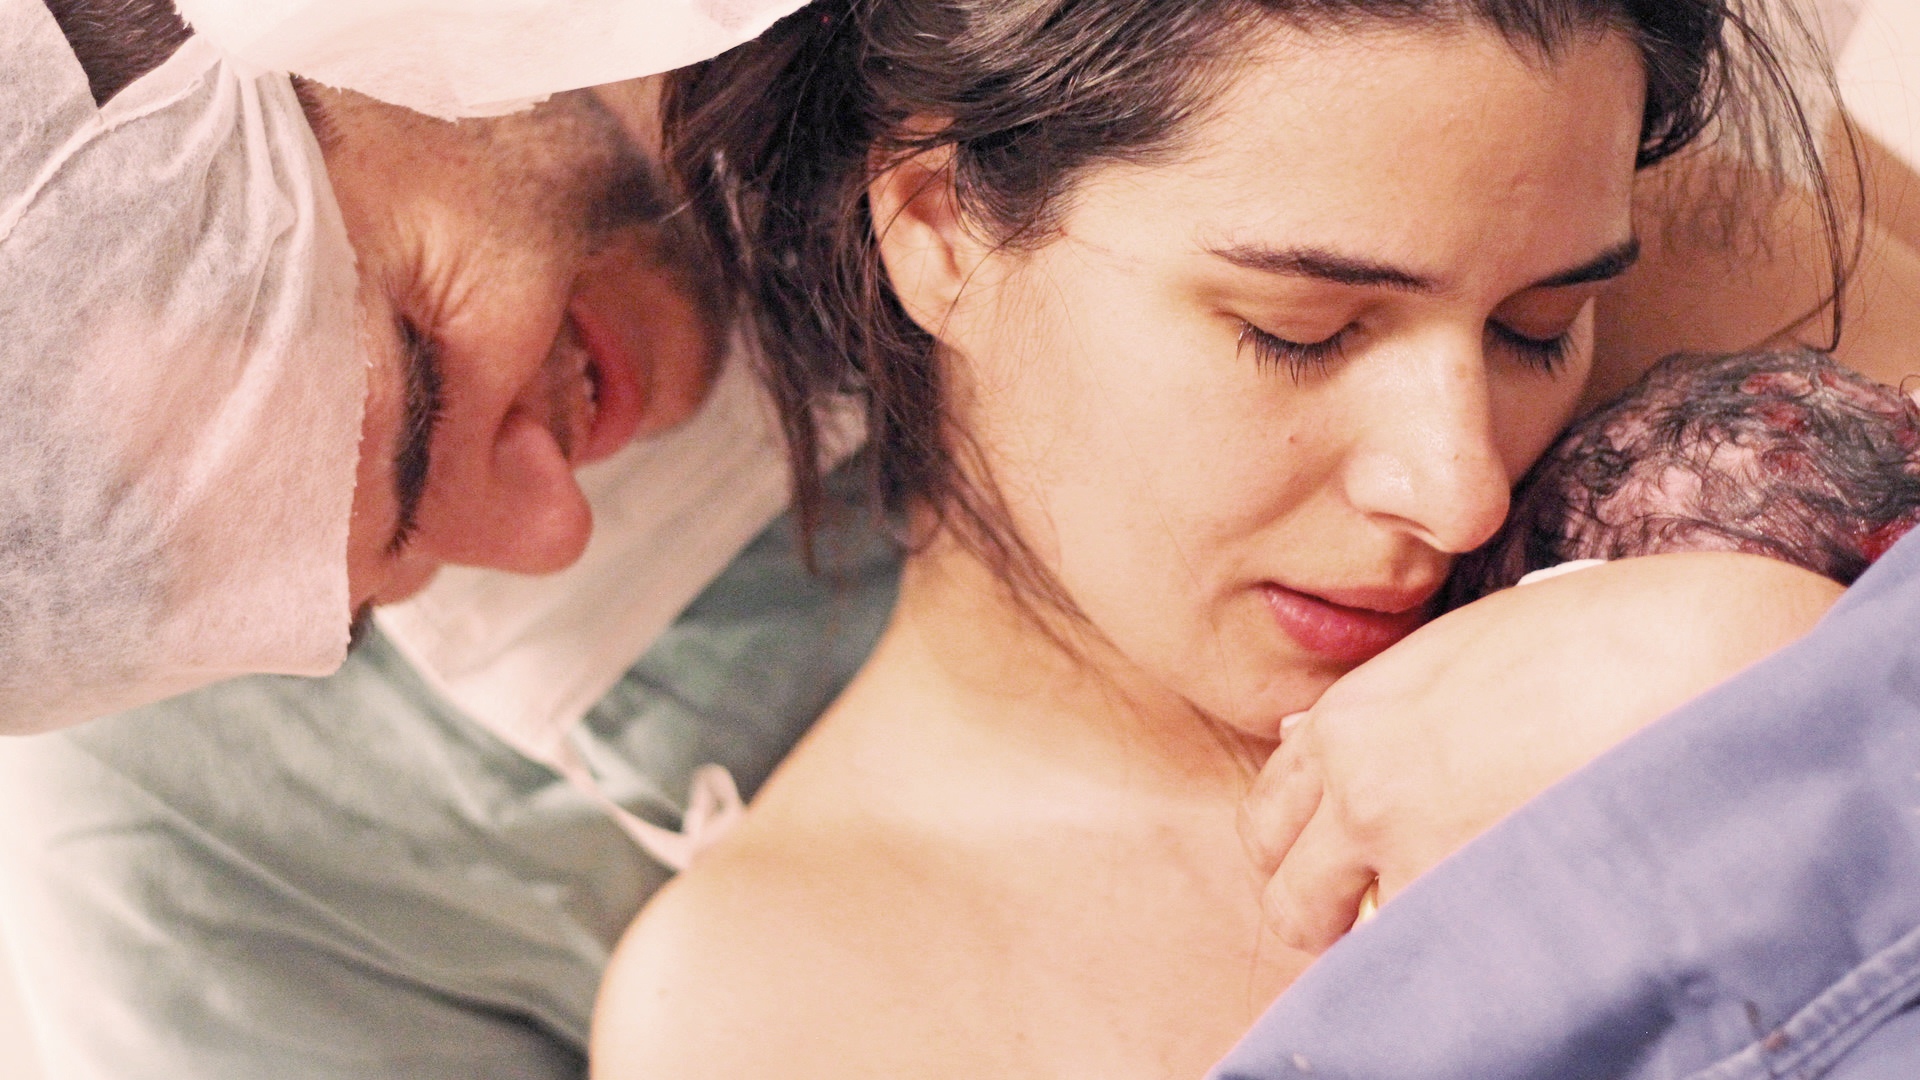 Mãe acaba de dar à luz, com bebê no colo. Ao seu lado, um homem com touca hospitalar lhe abraça e chora.